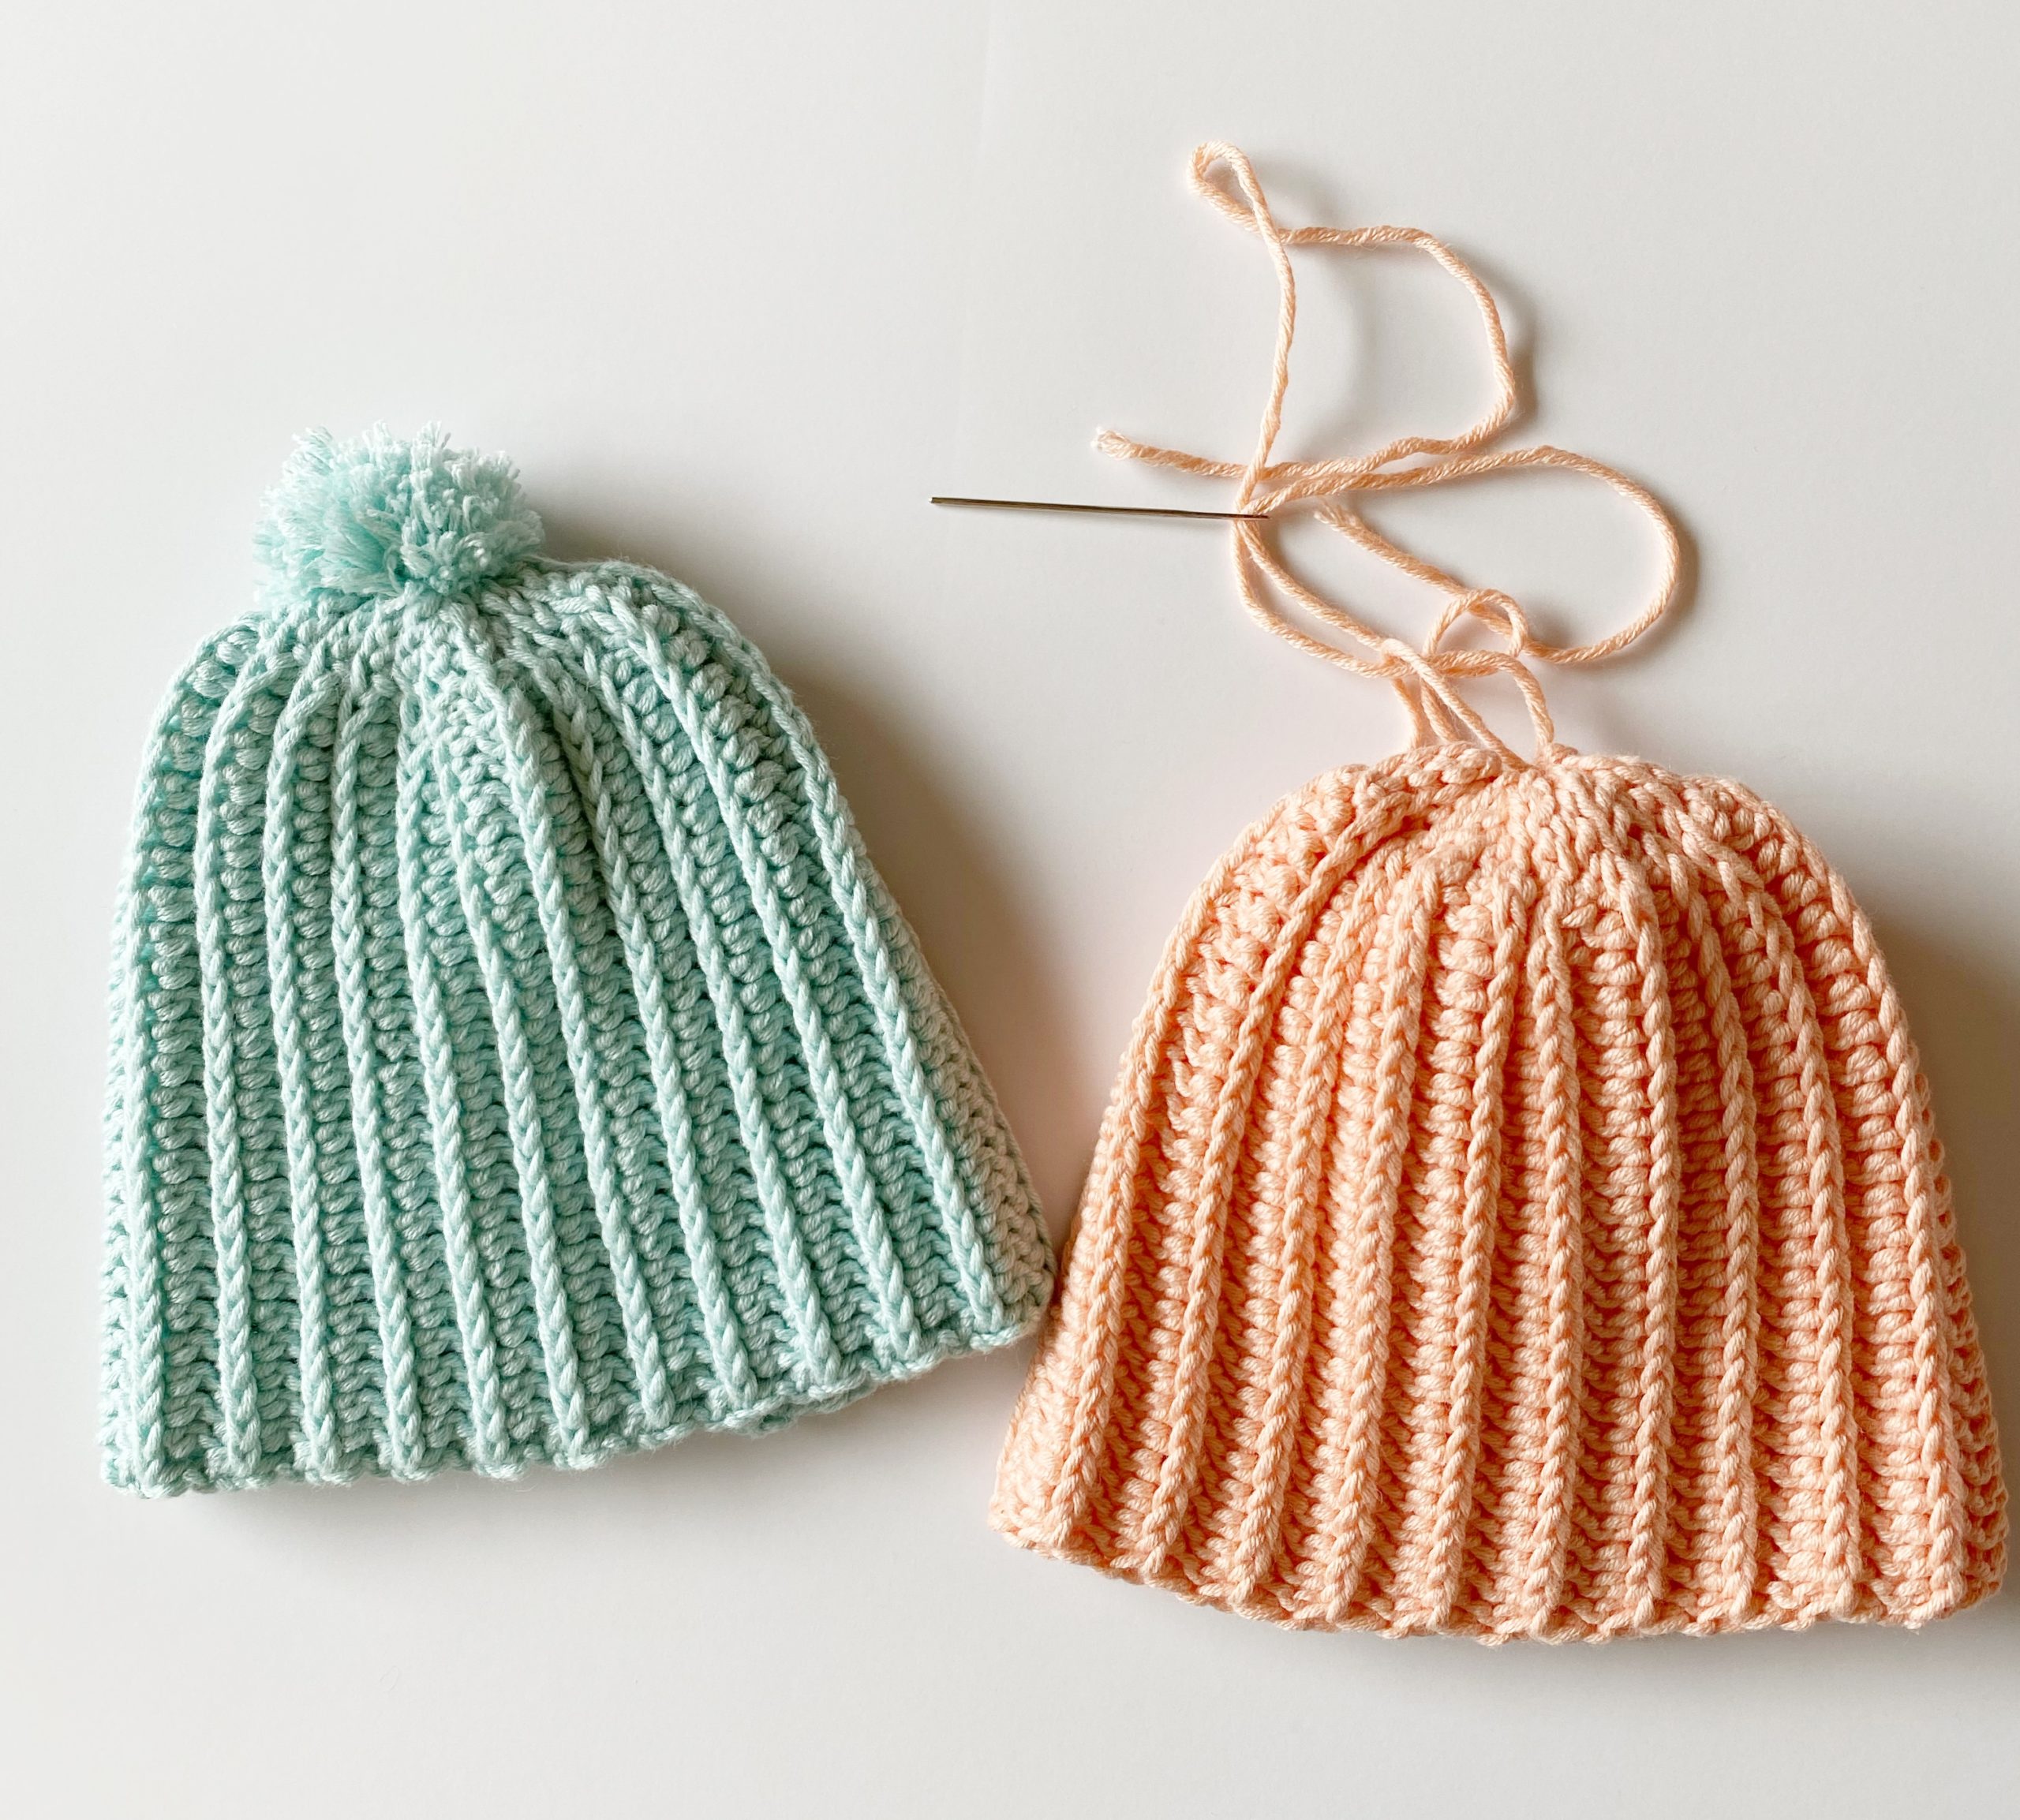 Daisy Farm Crafts Crochet Hat Pattern Crochet Hats Free Pattern | My ...